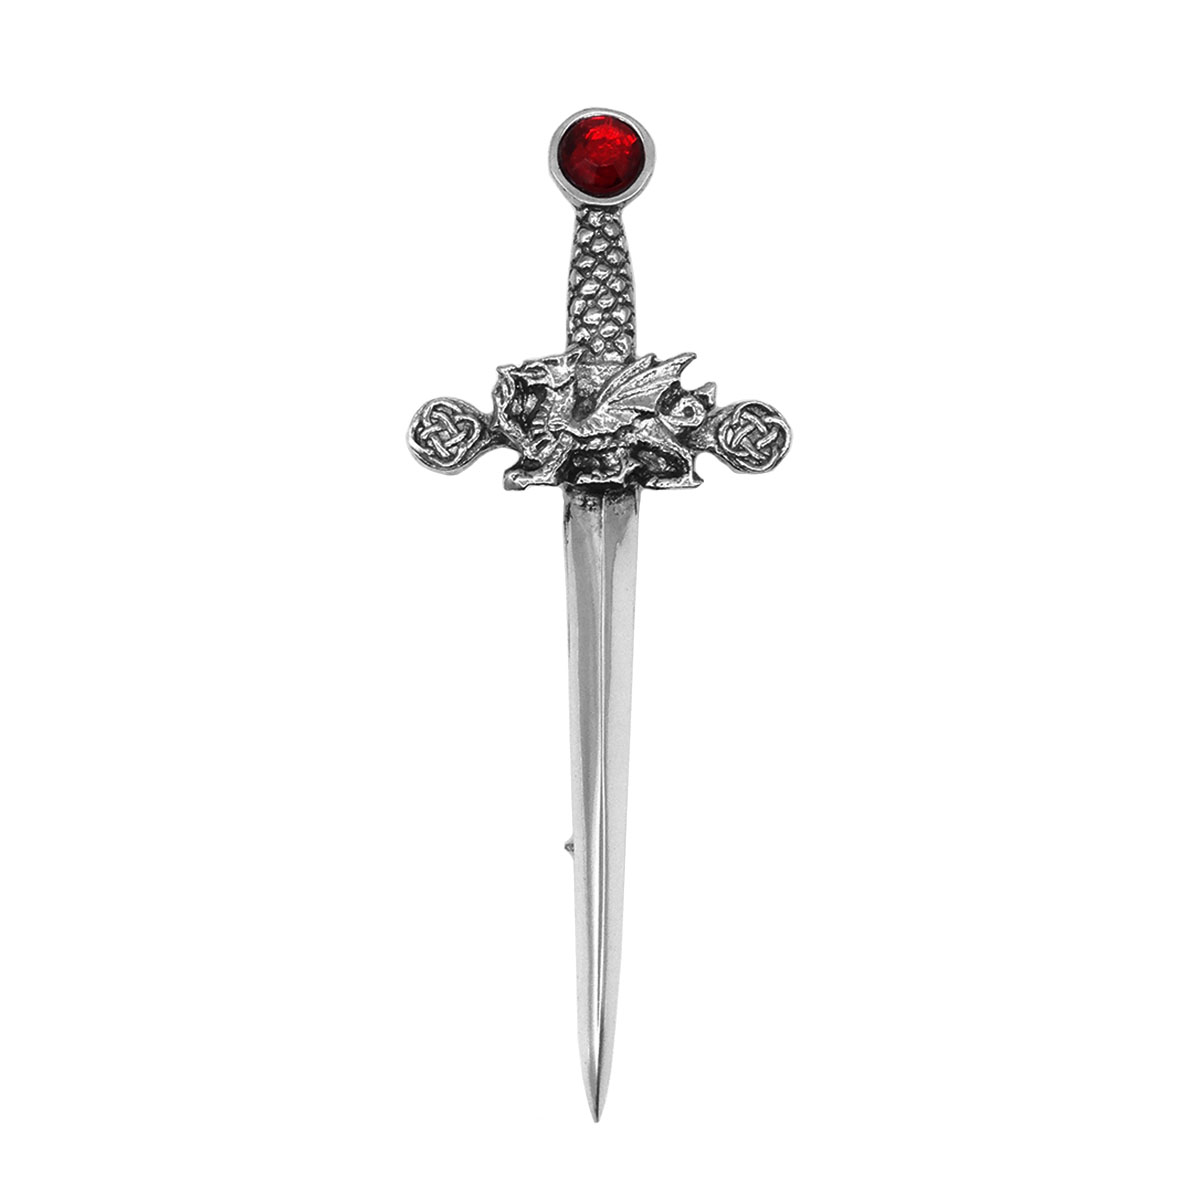 NEW Celtic Sword Chrome Finish Kilt Pin Accessory for Kilts 